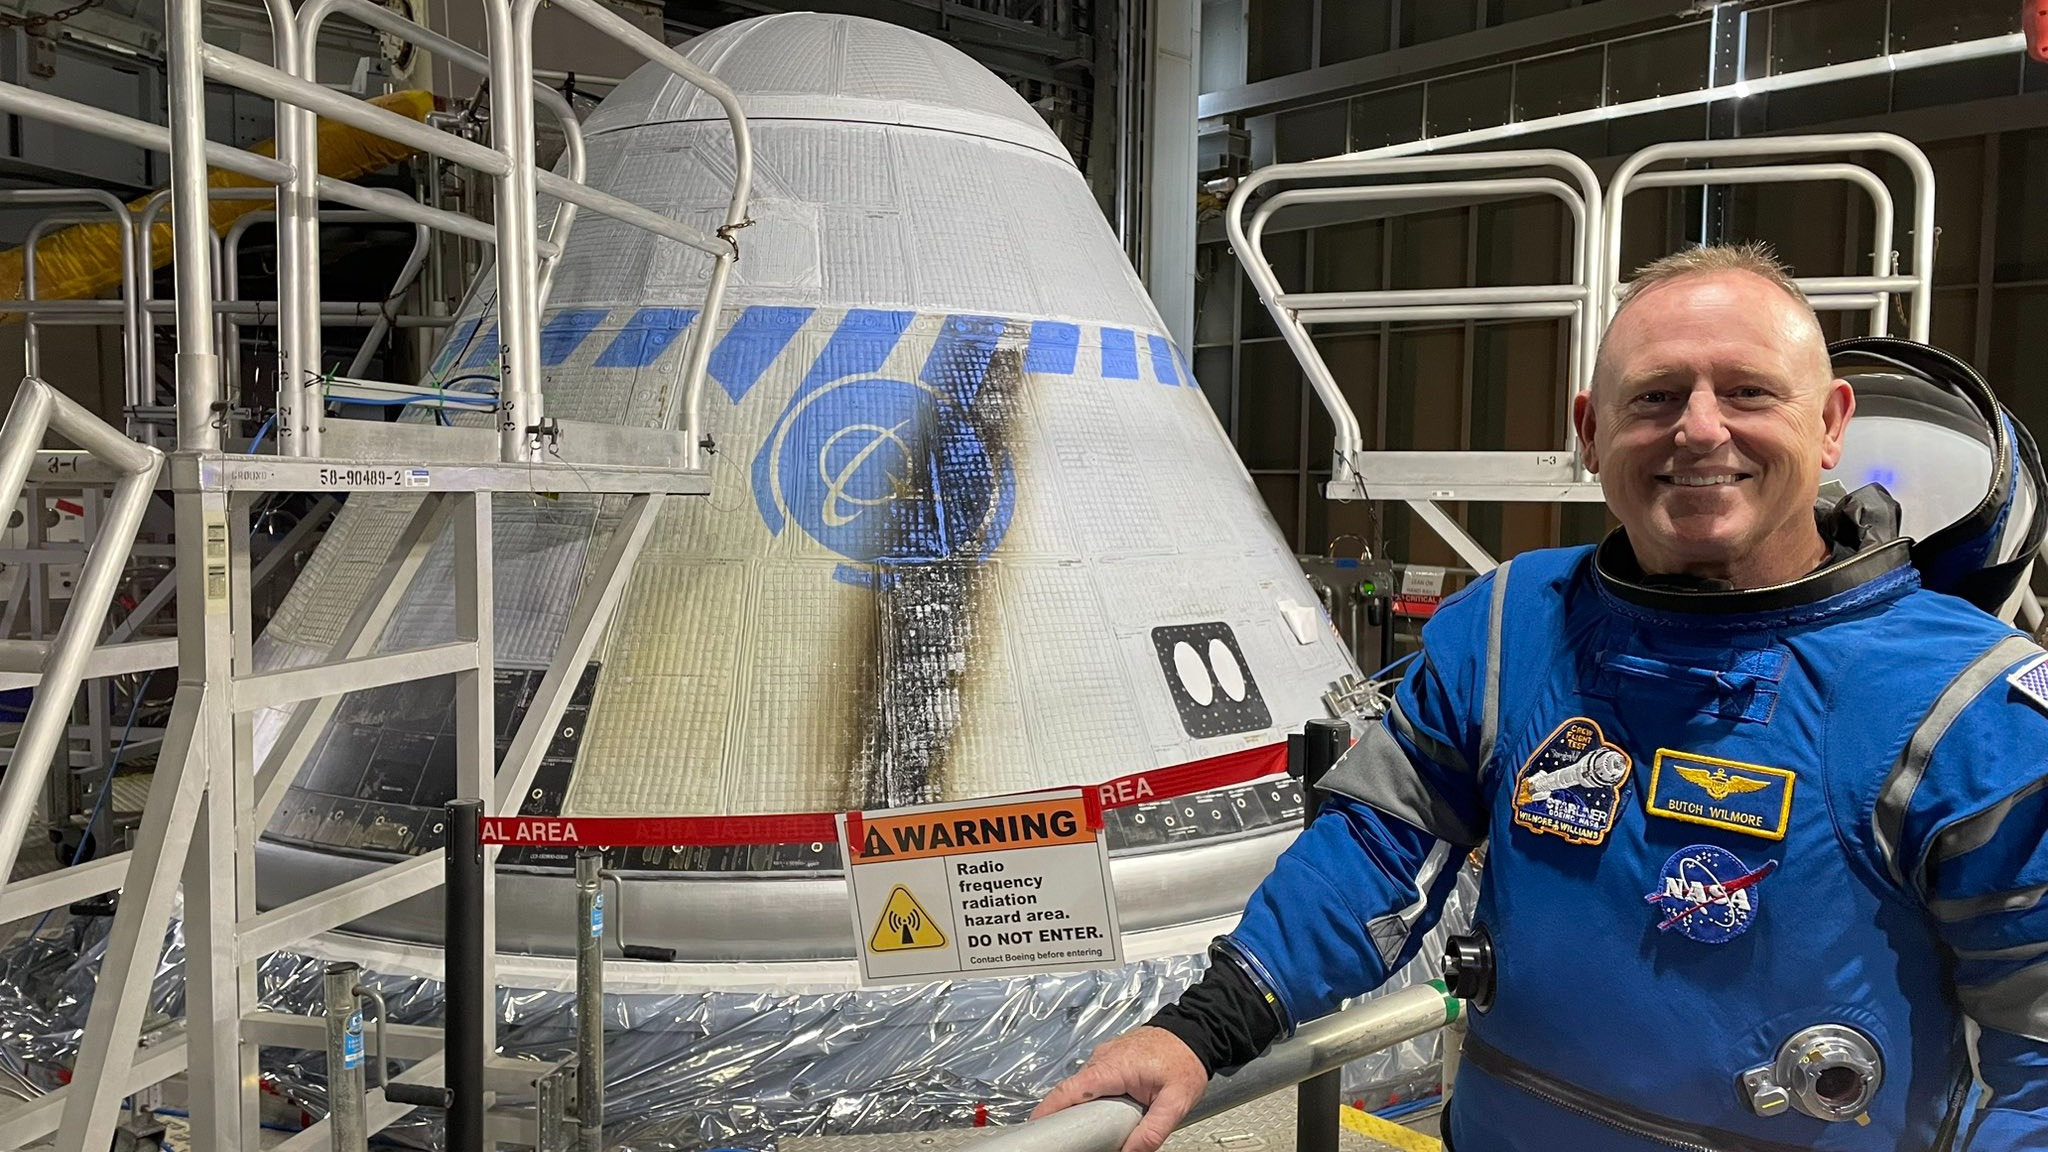 Ein Astronaut im Raumanzug neben einem kegelförmigen Raumschiff in der Anlage